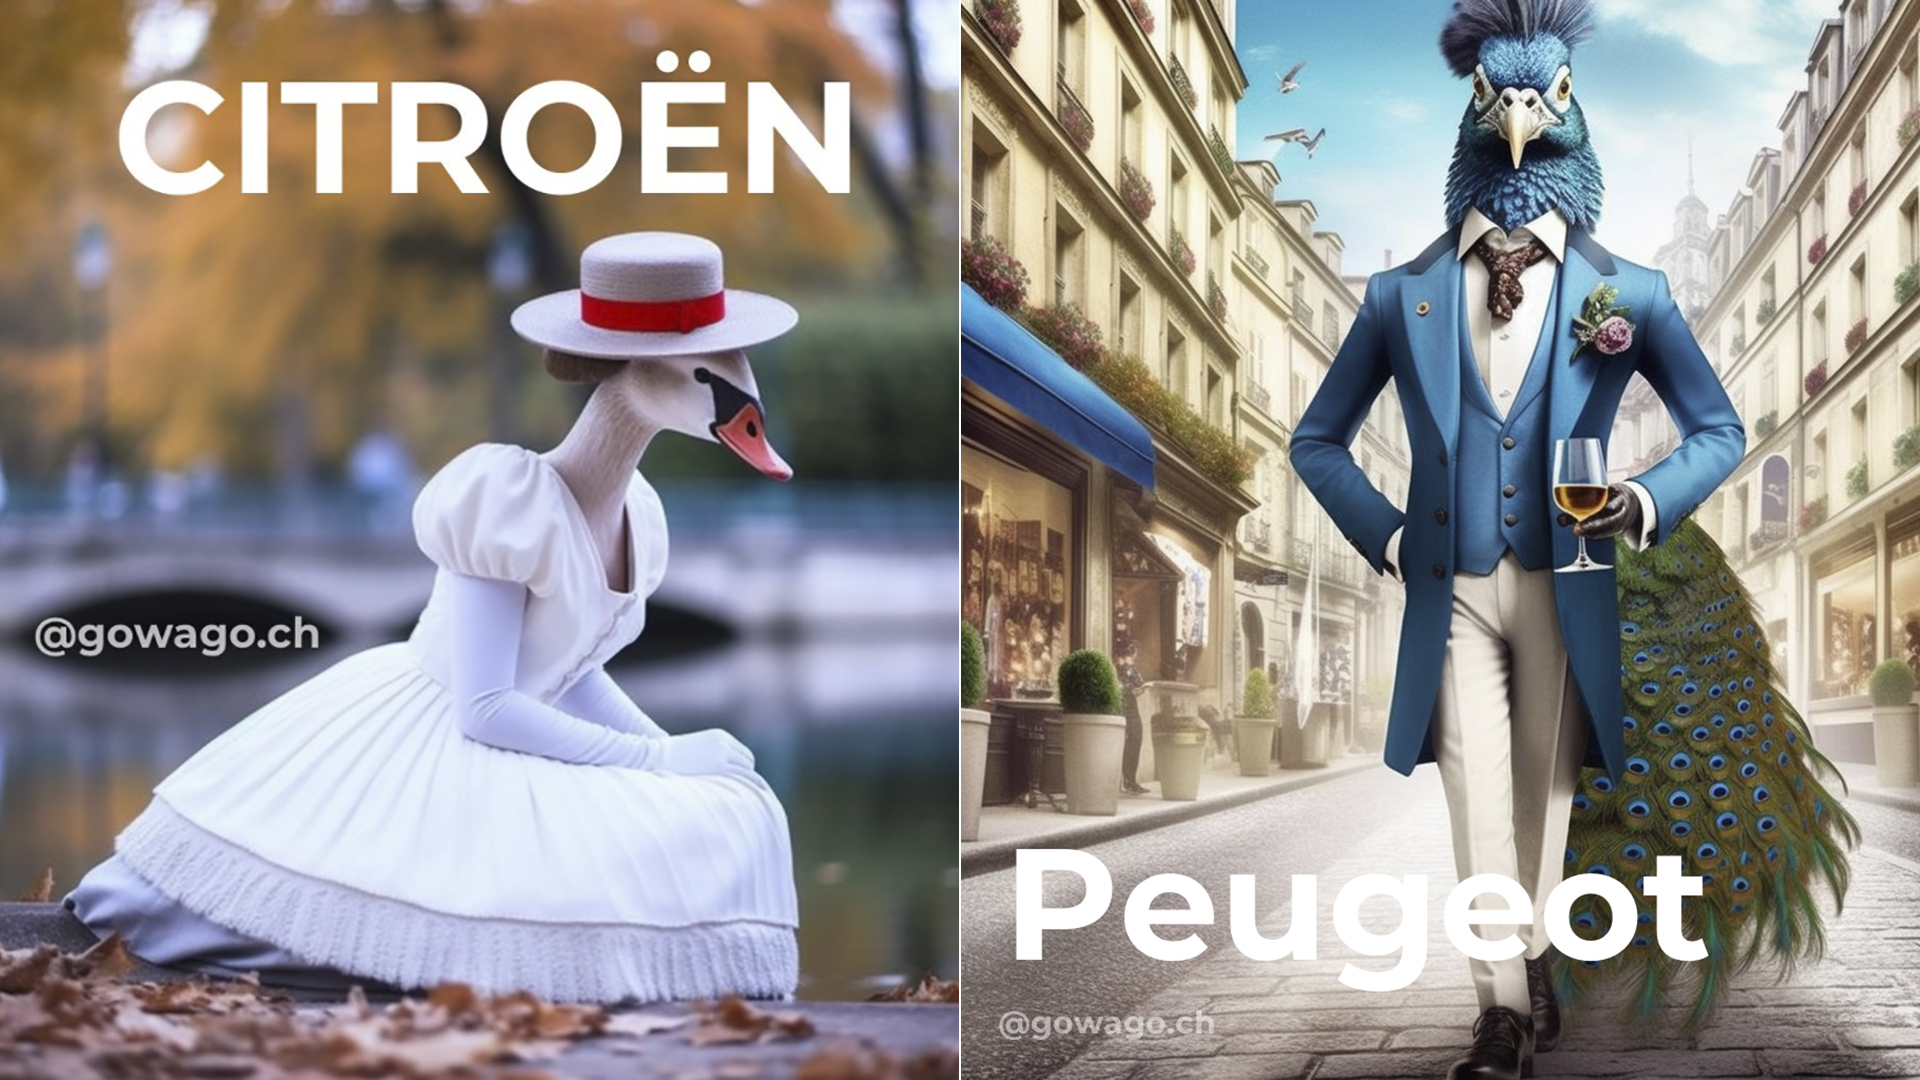 Las marcas francesas tienen una fuerte identidad nacional, y Citroën y Peugeot lo podrán comprobar en este experimento